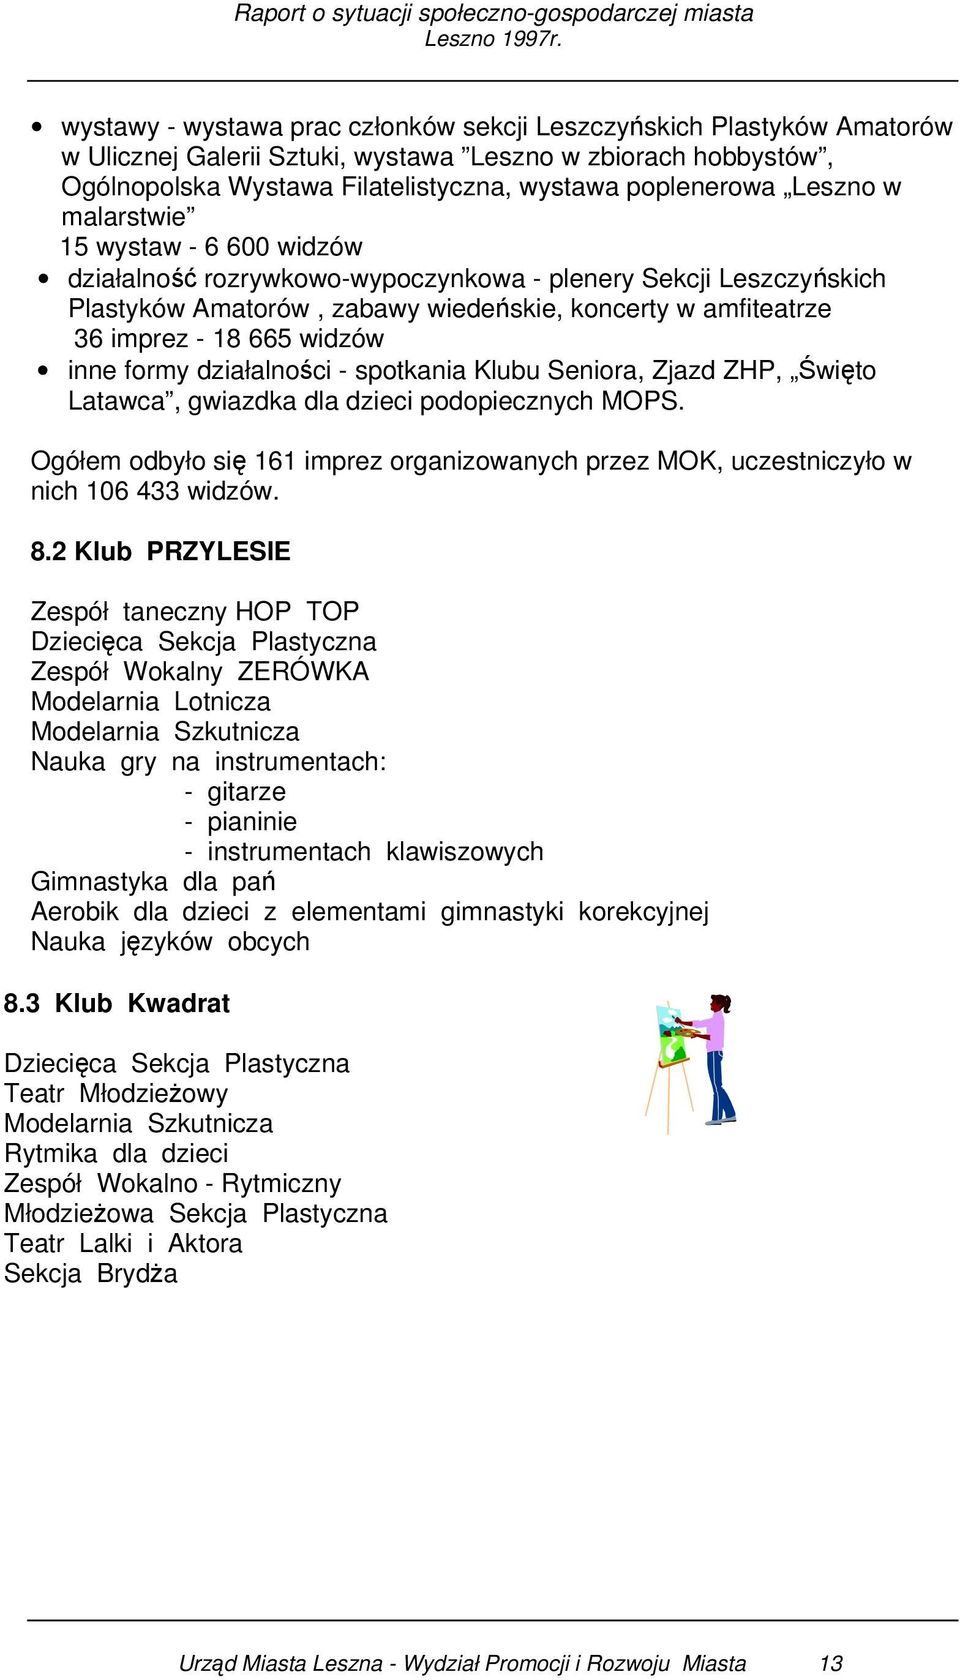 inne formy działalności - spotkania Klubu Seniora, Zjazd ZHP, Święto Latawca, gwiazdka dla dzieci podopiecznych MOPS.